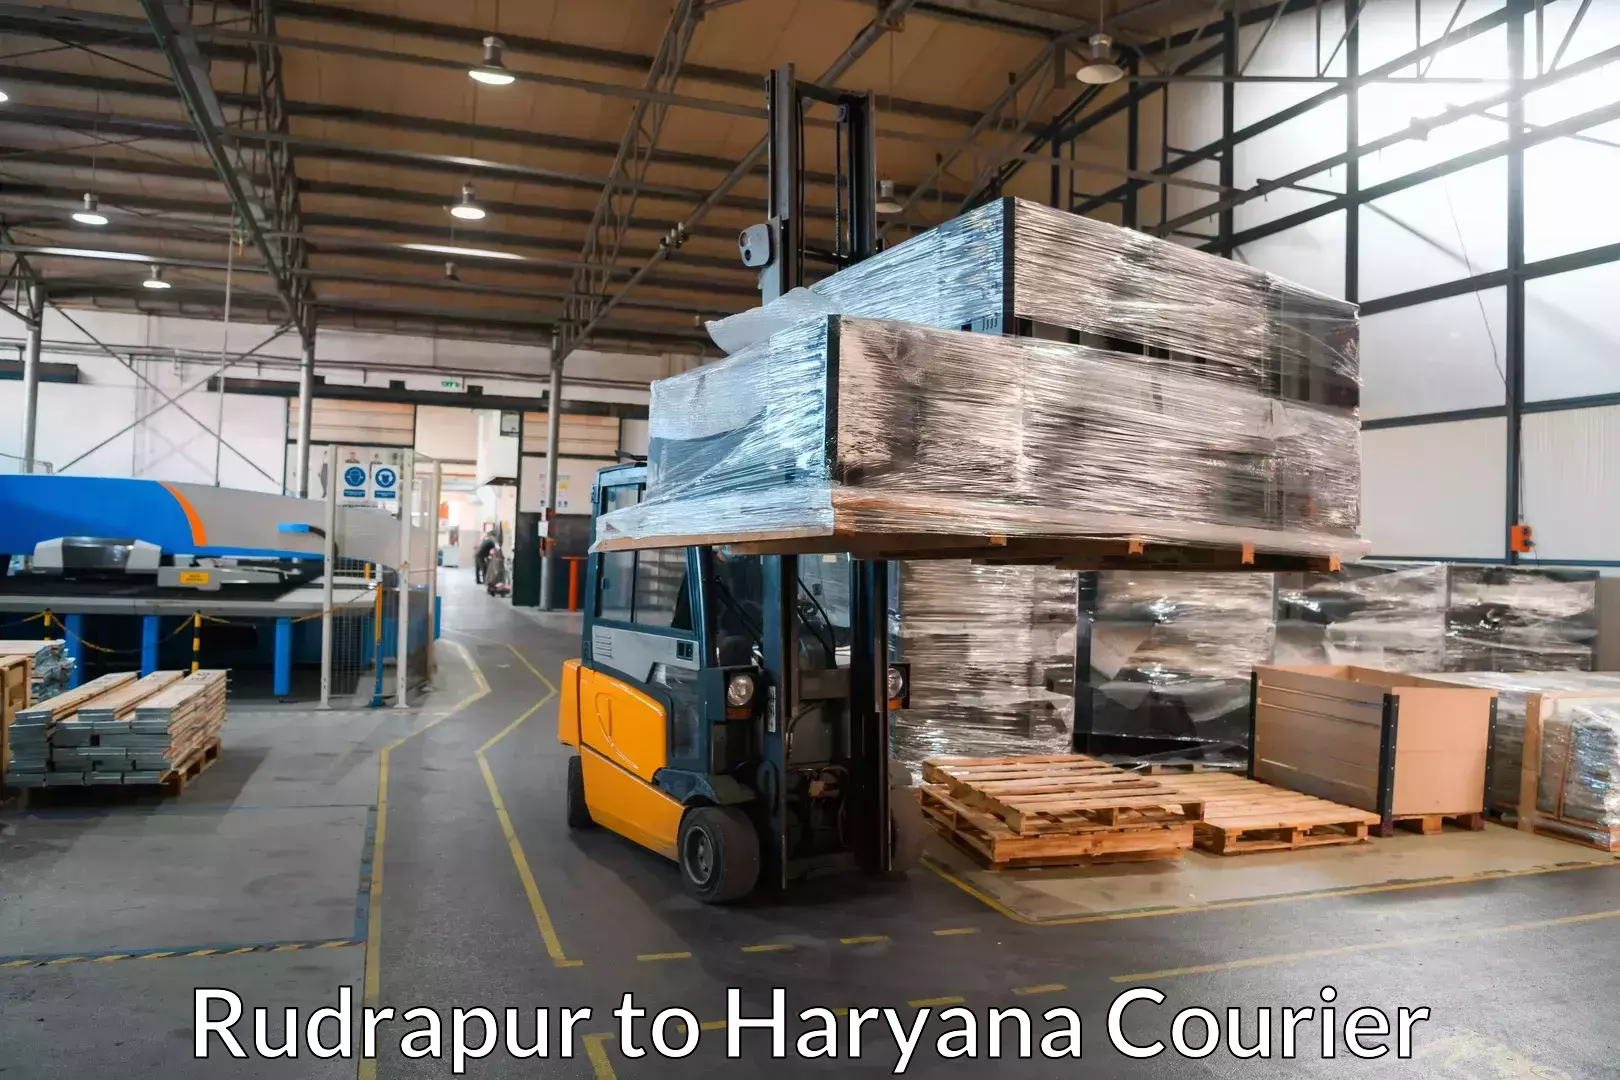 Furniture moving experts Rudrapur to Dharuhera